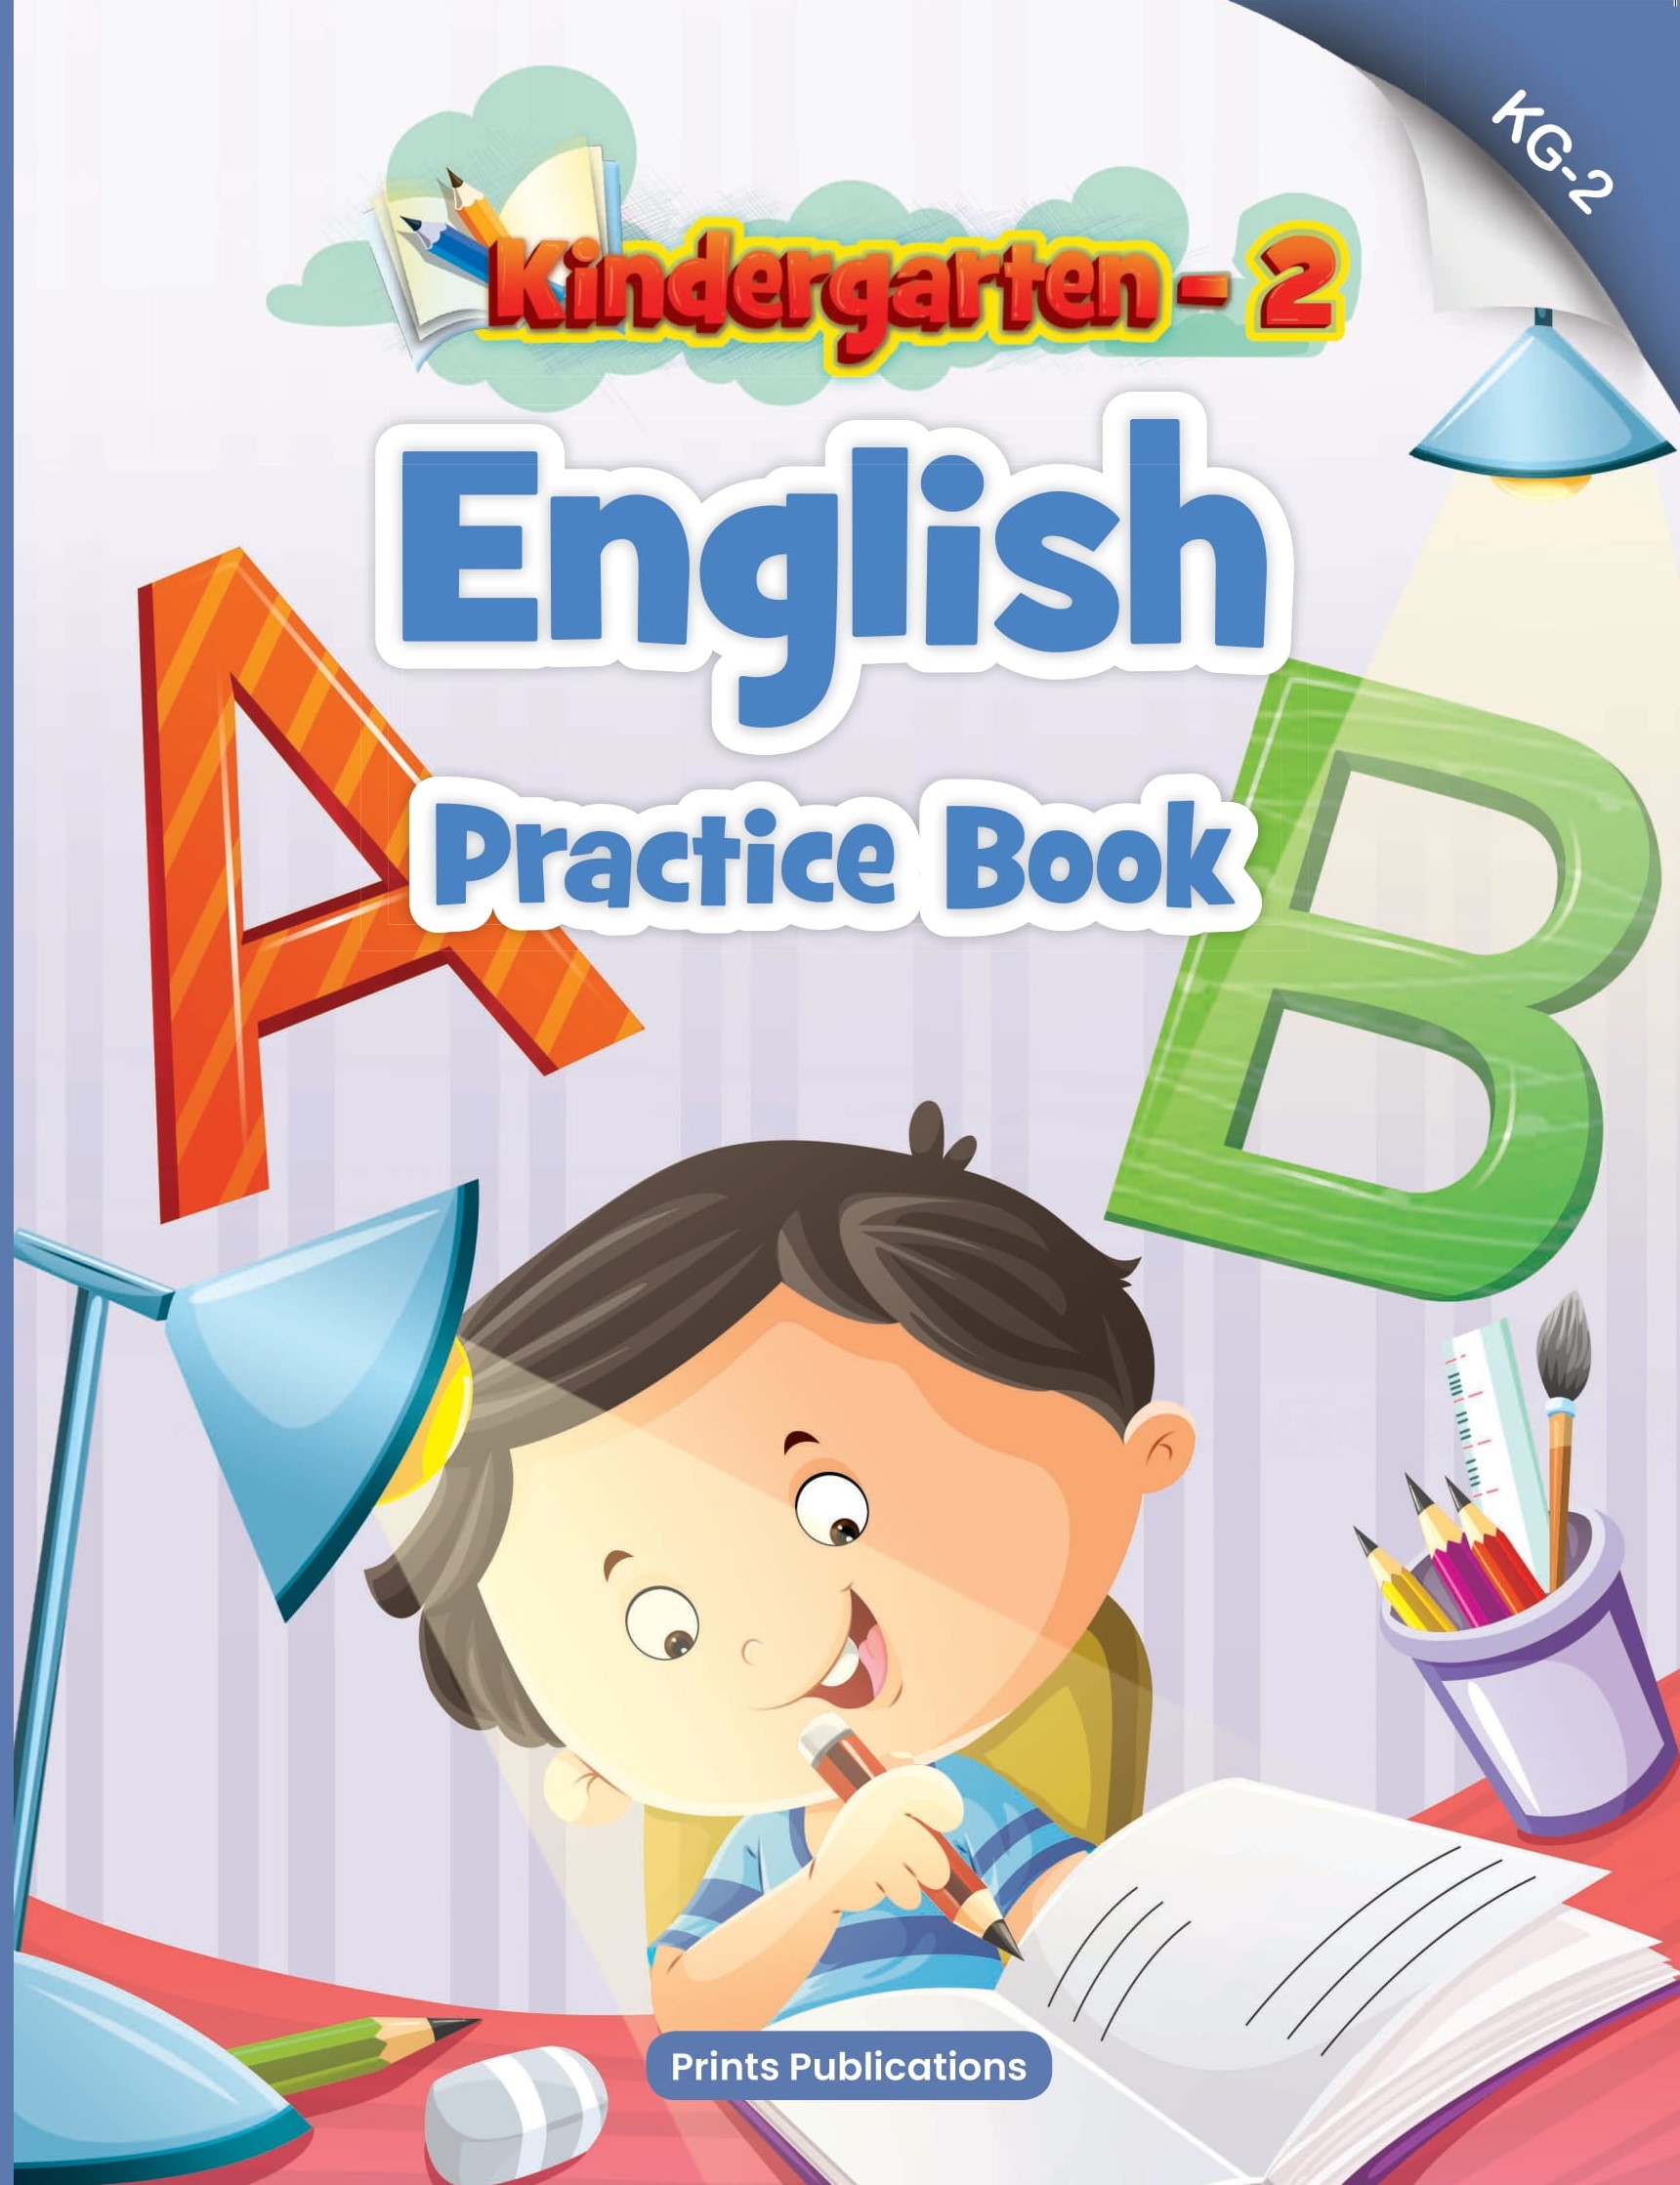 Kindergarten-2: English Practice Book